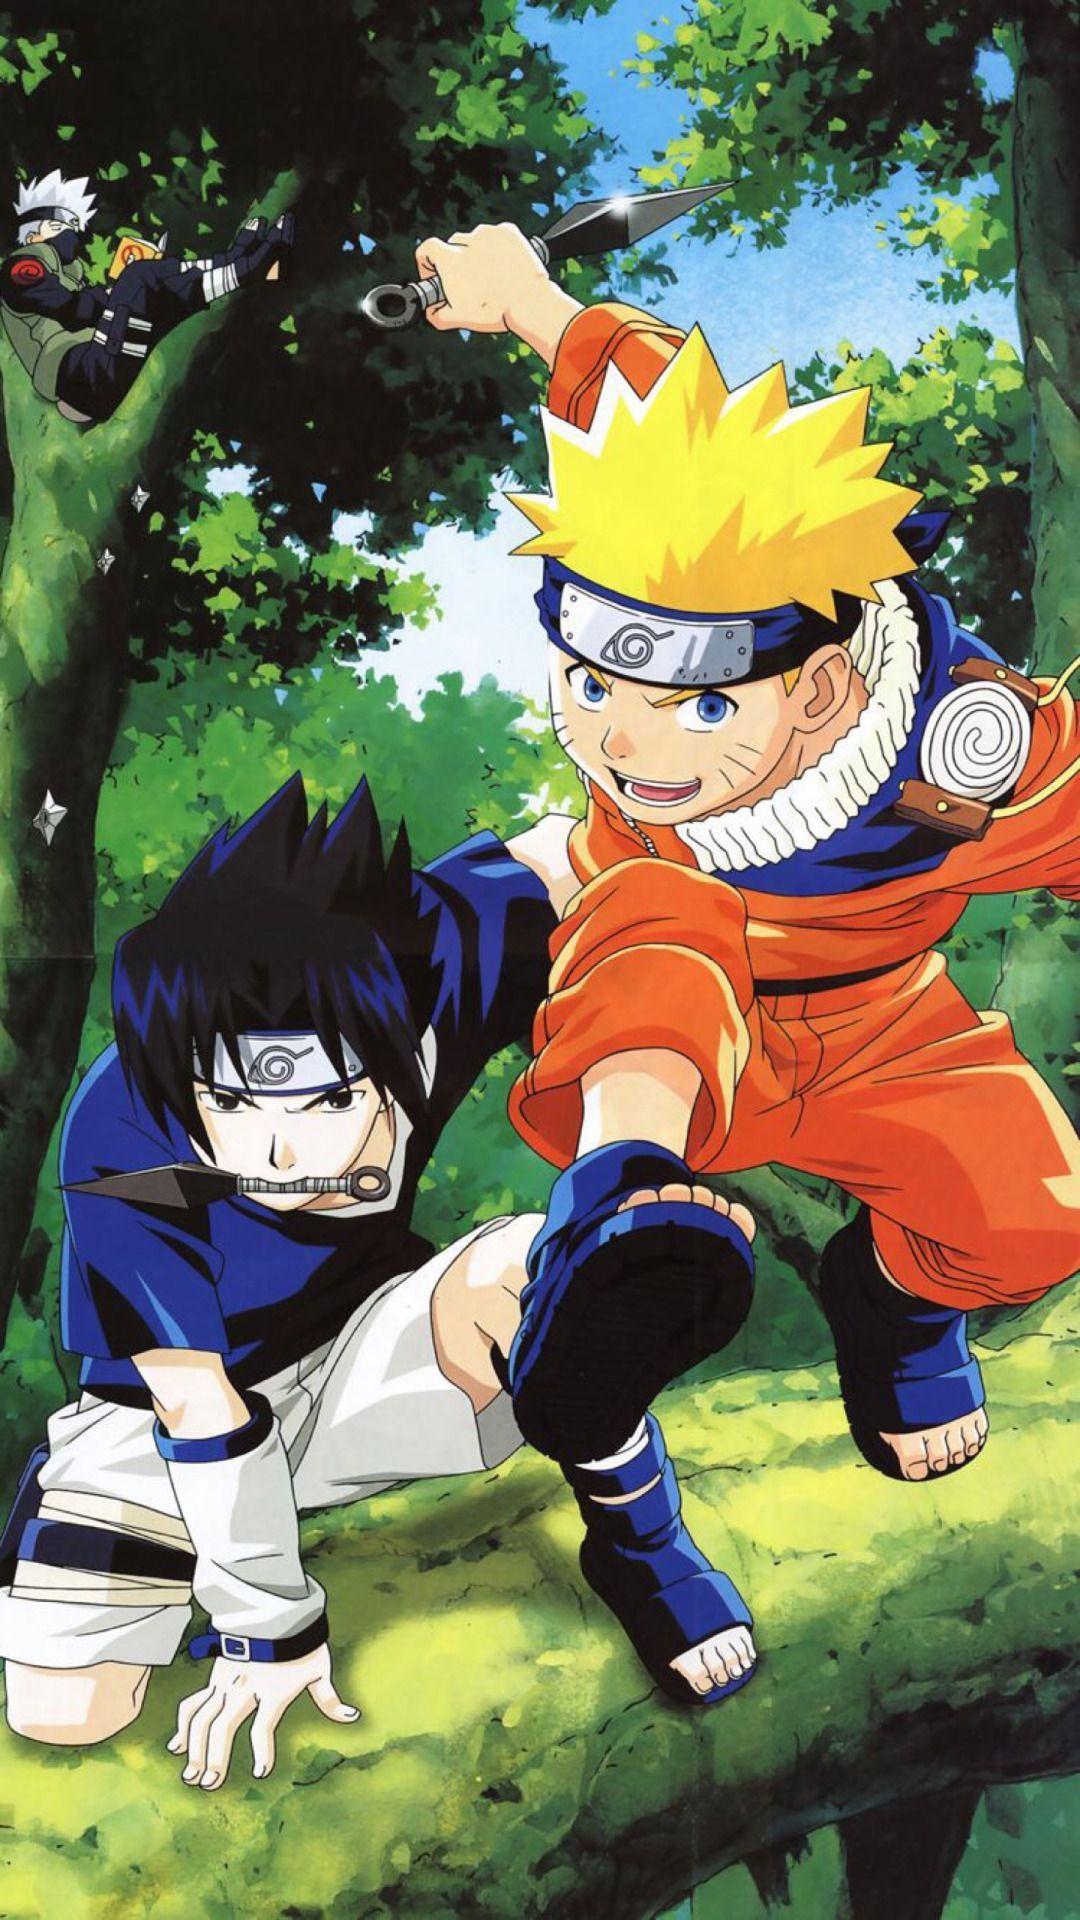 Bạn thích Naruto khi còn là một thiếu niên phải không? Hãy nhanh tay sở hữu bức hình nền Teen Naruto để tái hiện lại những kỷ niệm đẹp đó. Hình ảnh Naruto phiên bản trẻ trung và tràn đầy năng lượng chắc chắn sẽ khiến bạn cảm thấy thích thú và vui vẻ.